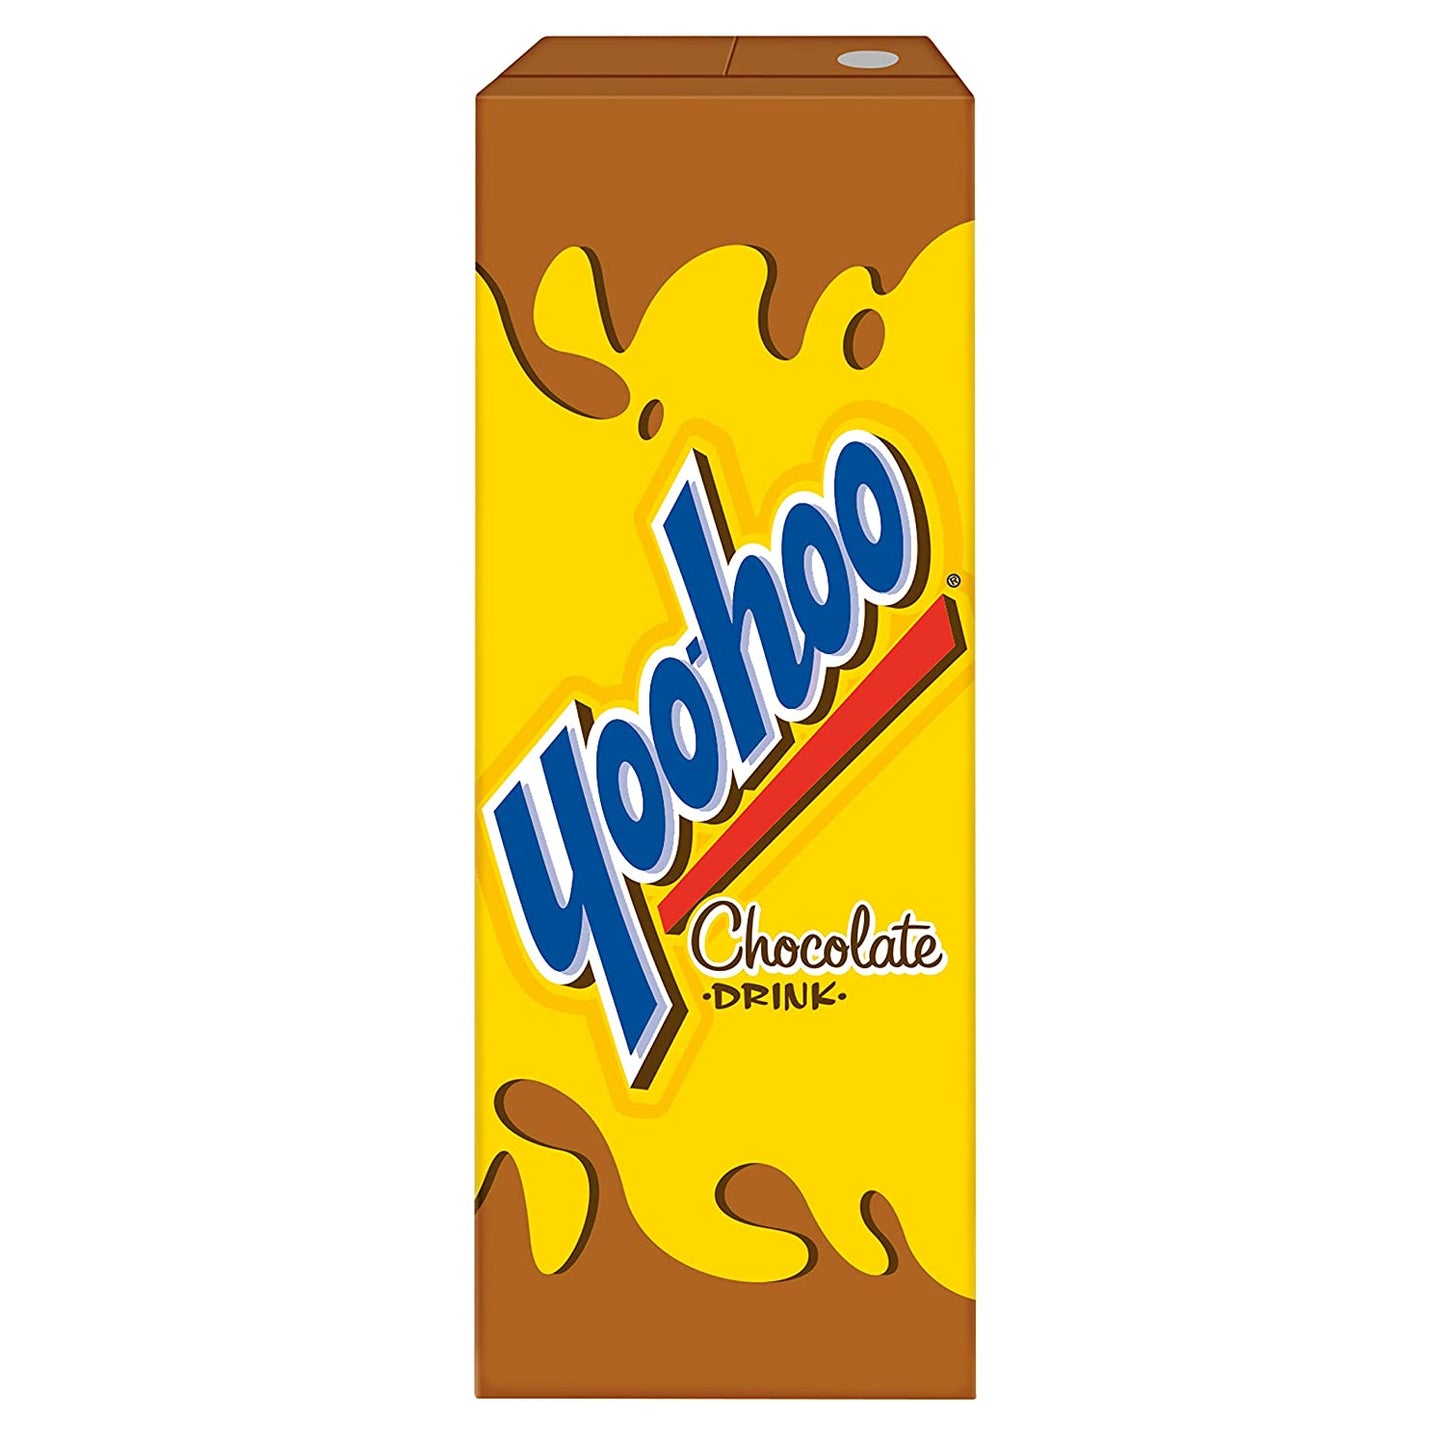 Yoo-hoo Chocolate Drink, 6.5 fl oz boxes (Pack of 32)